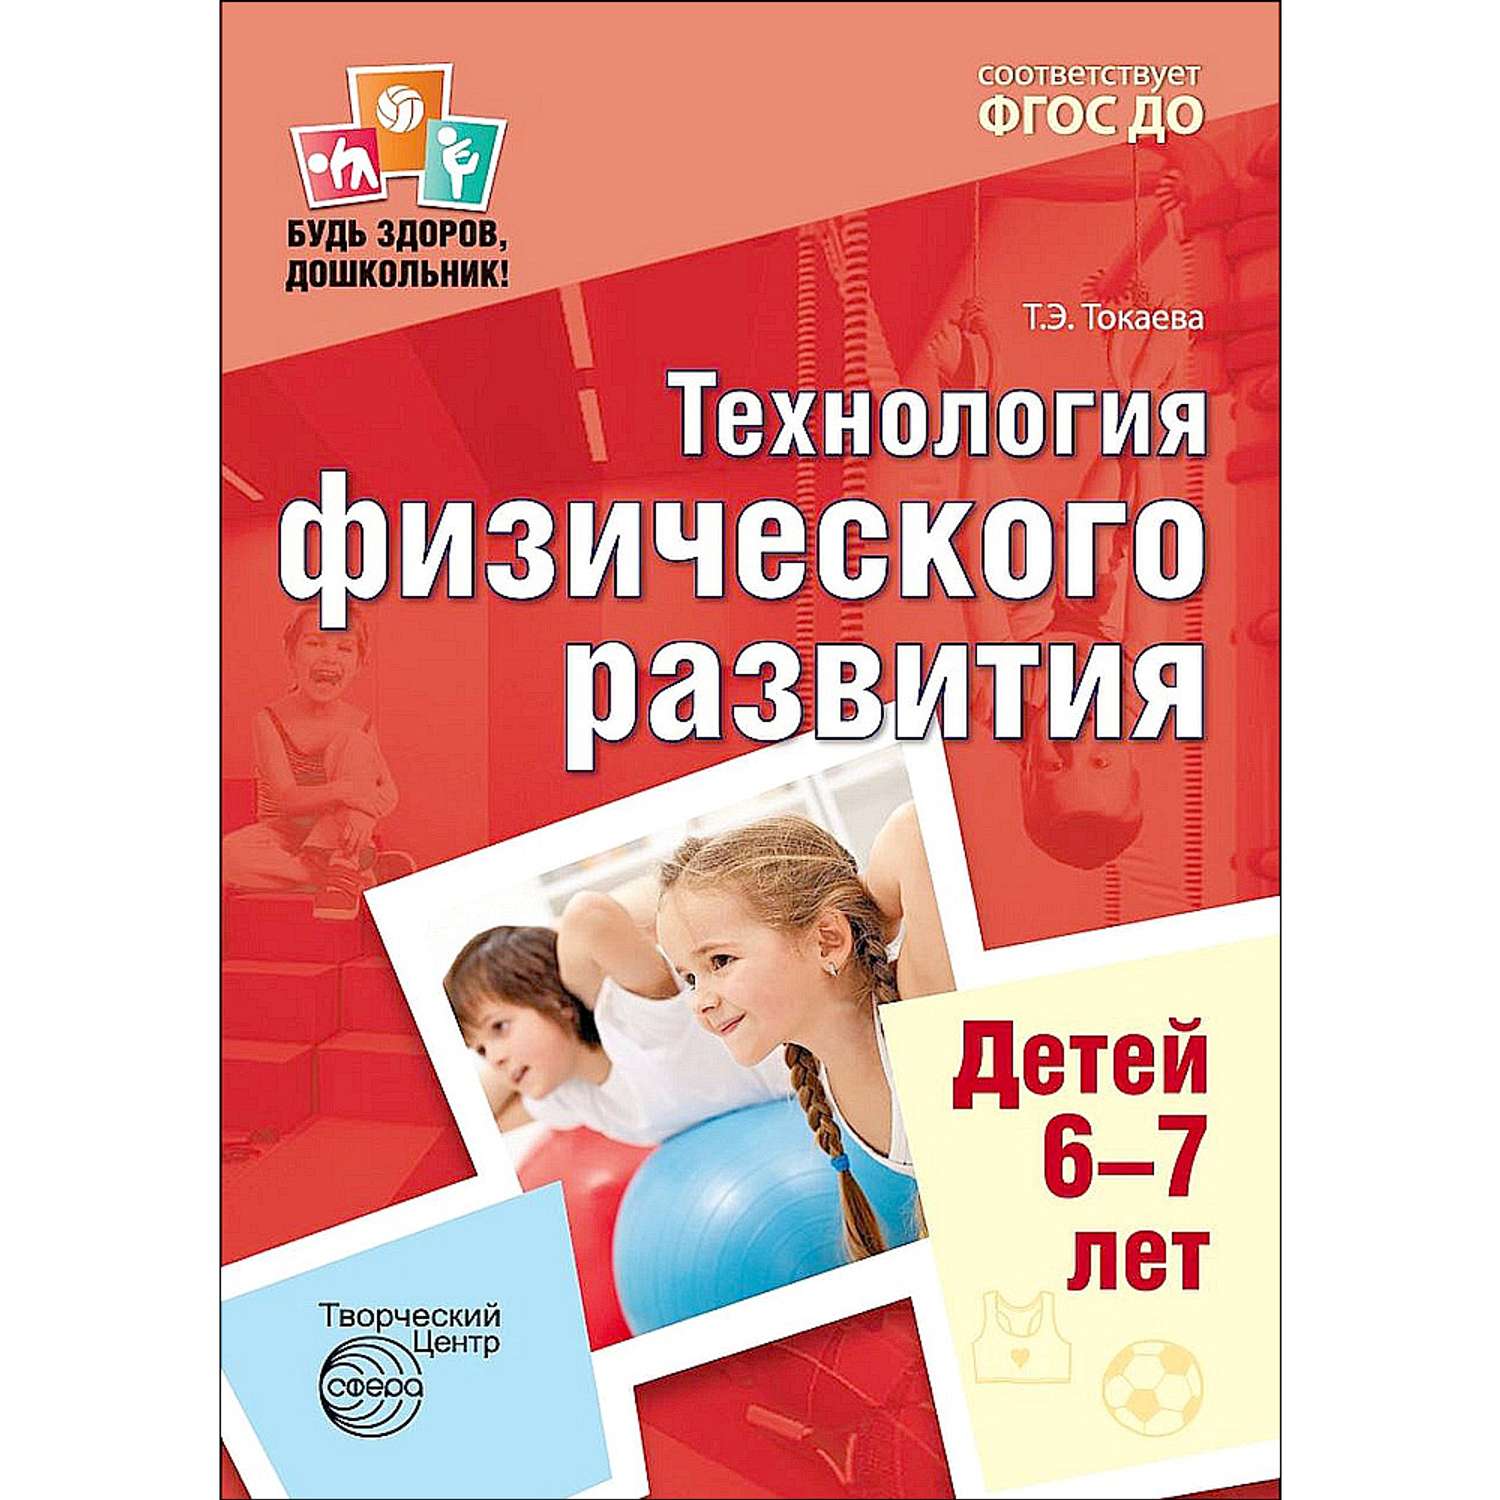 Книга ТЦ Сфера Будь здоров дошкольник. Технология физического развития детей 6-7 лет - фото 1